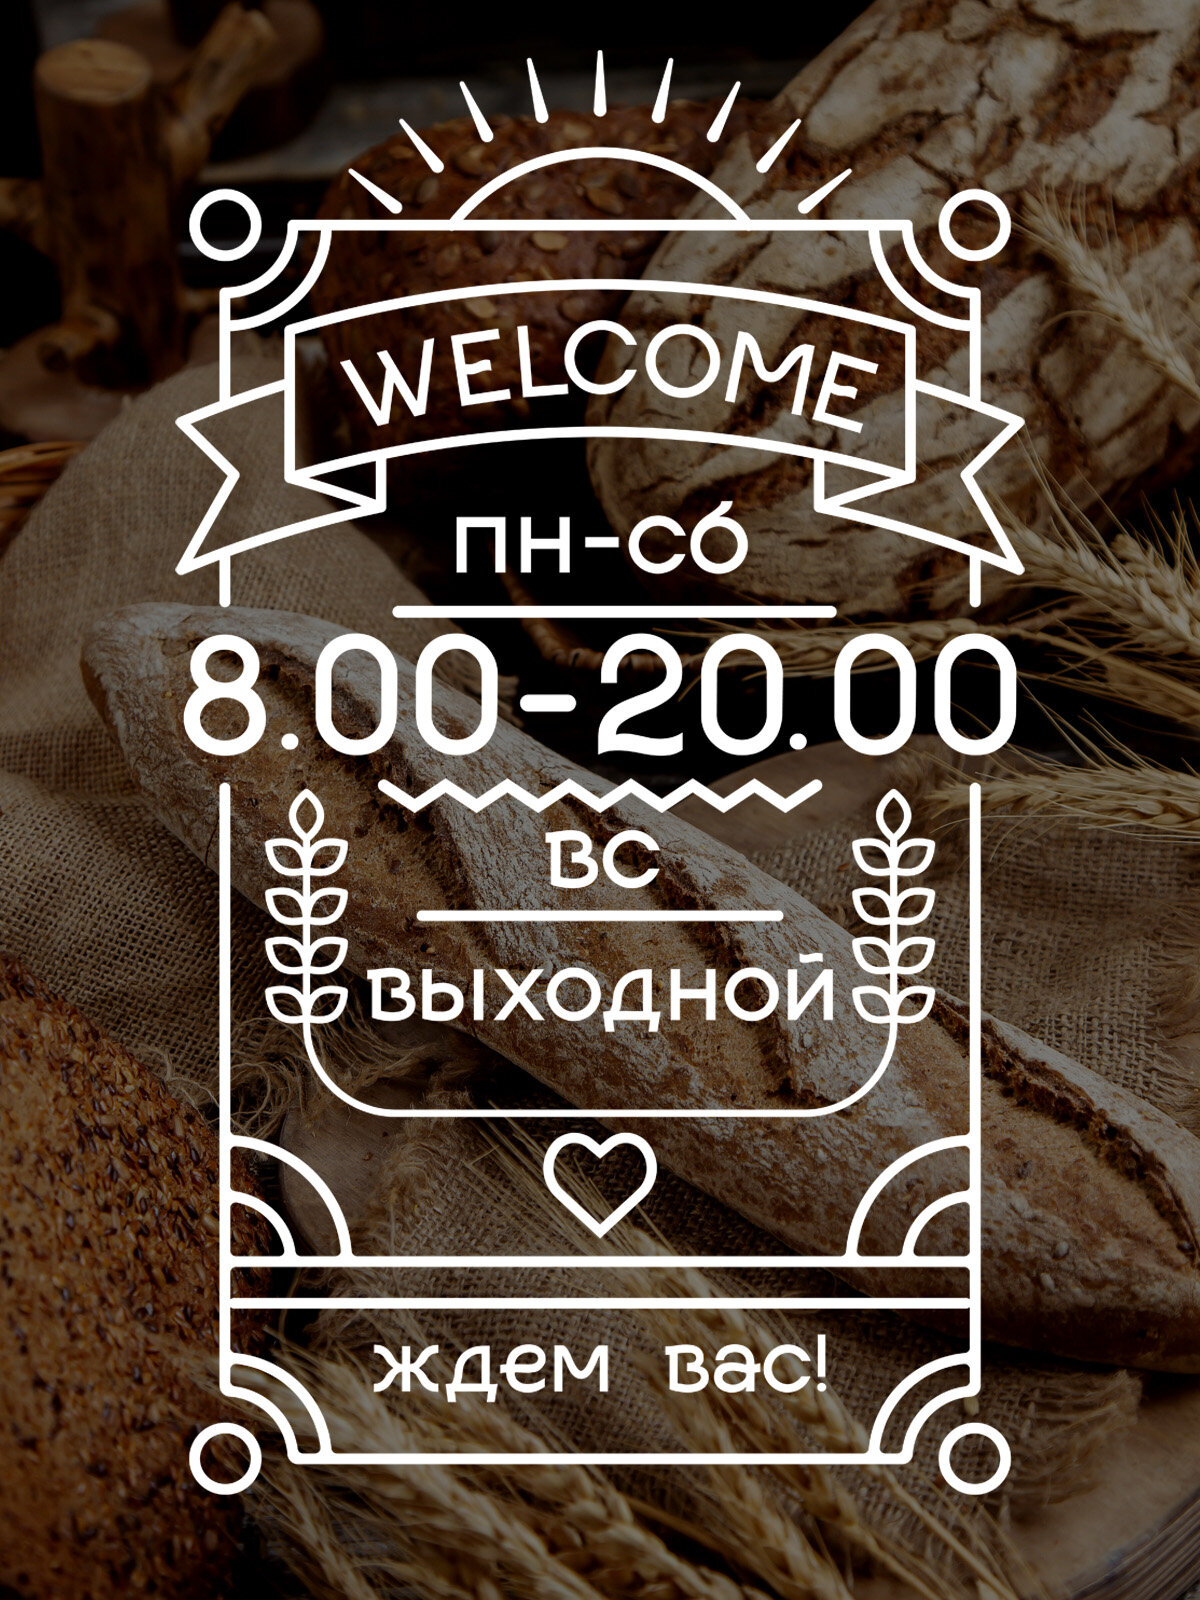 Наклейка 'Режим Welcome' (часы работы магазина с выходными, выбери свое время)